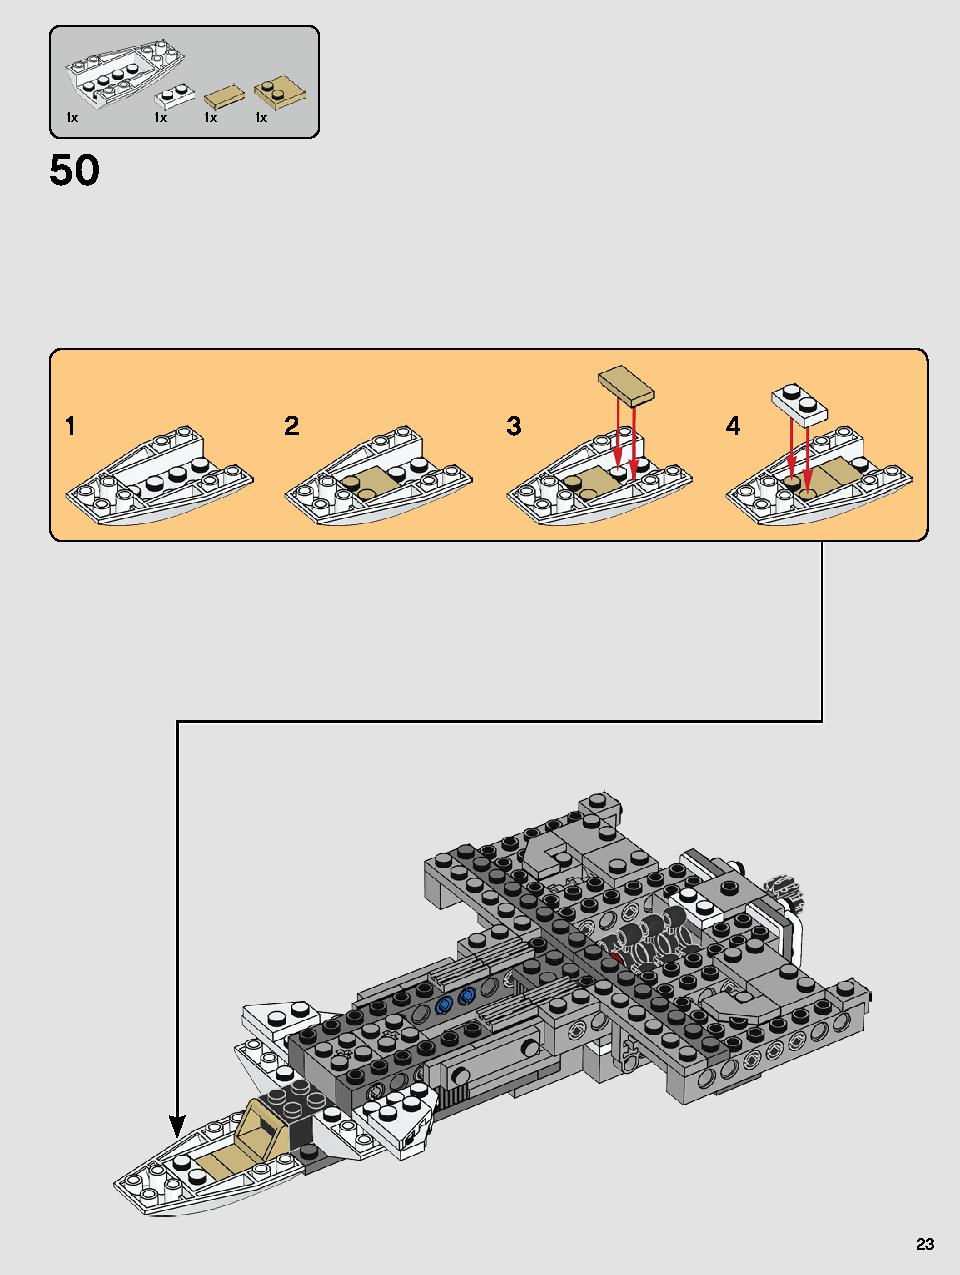 스타워즈 반란군 Y-윙 스타파이터™ 75249 레고 세트 제품정보 레고 조립설명서 23 page